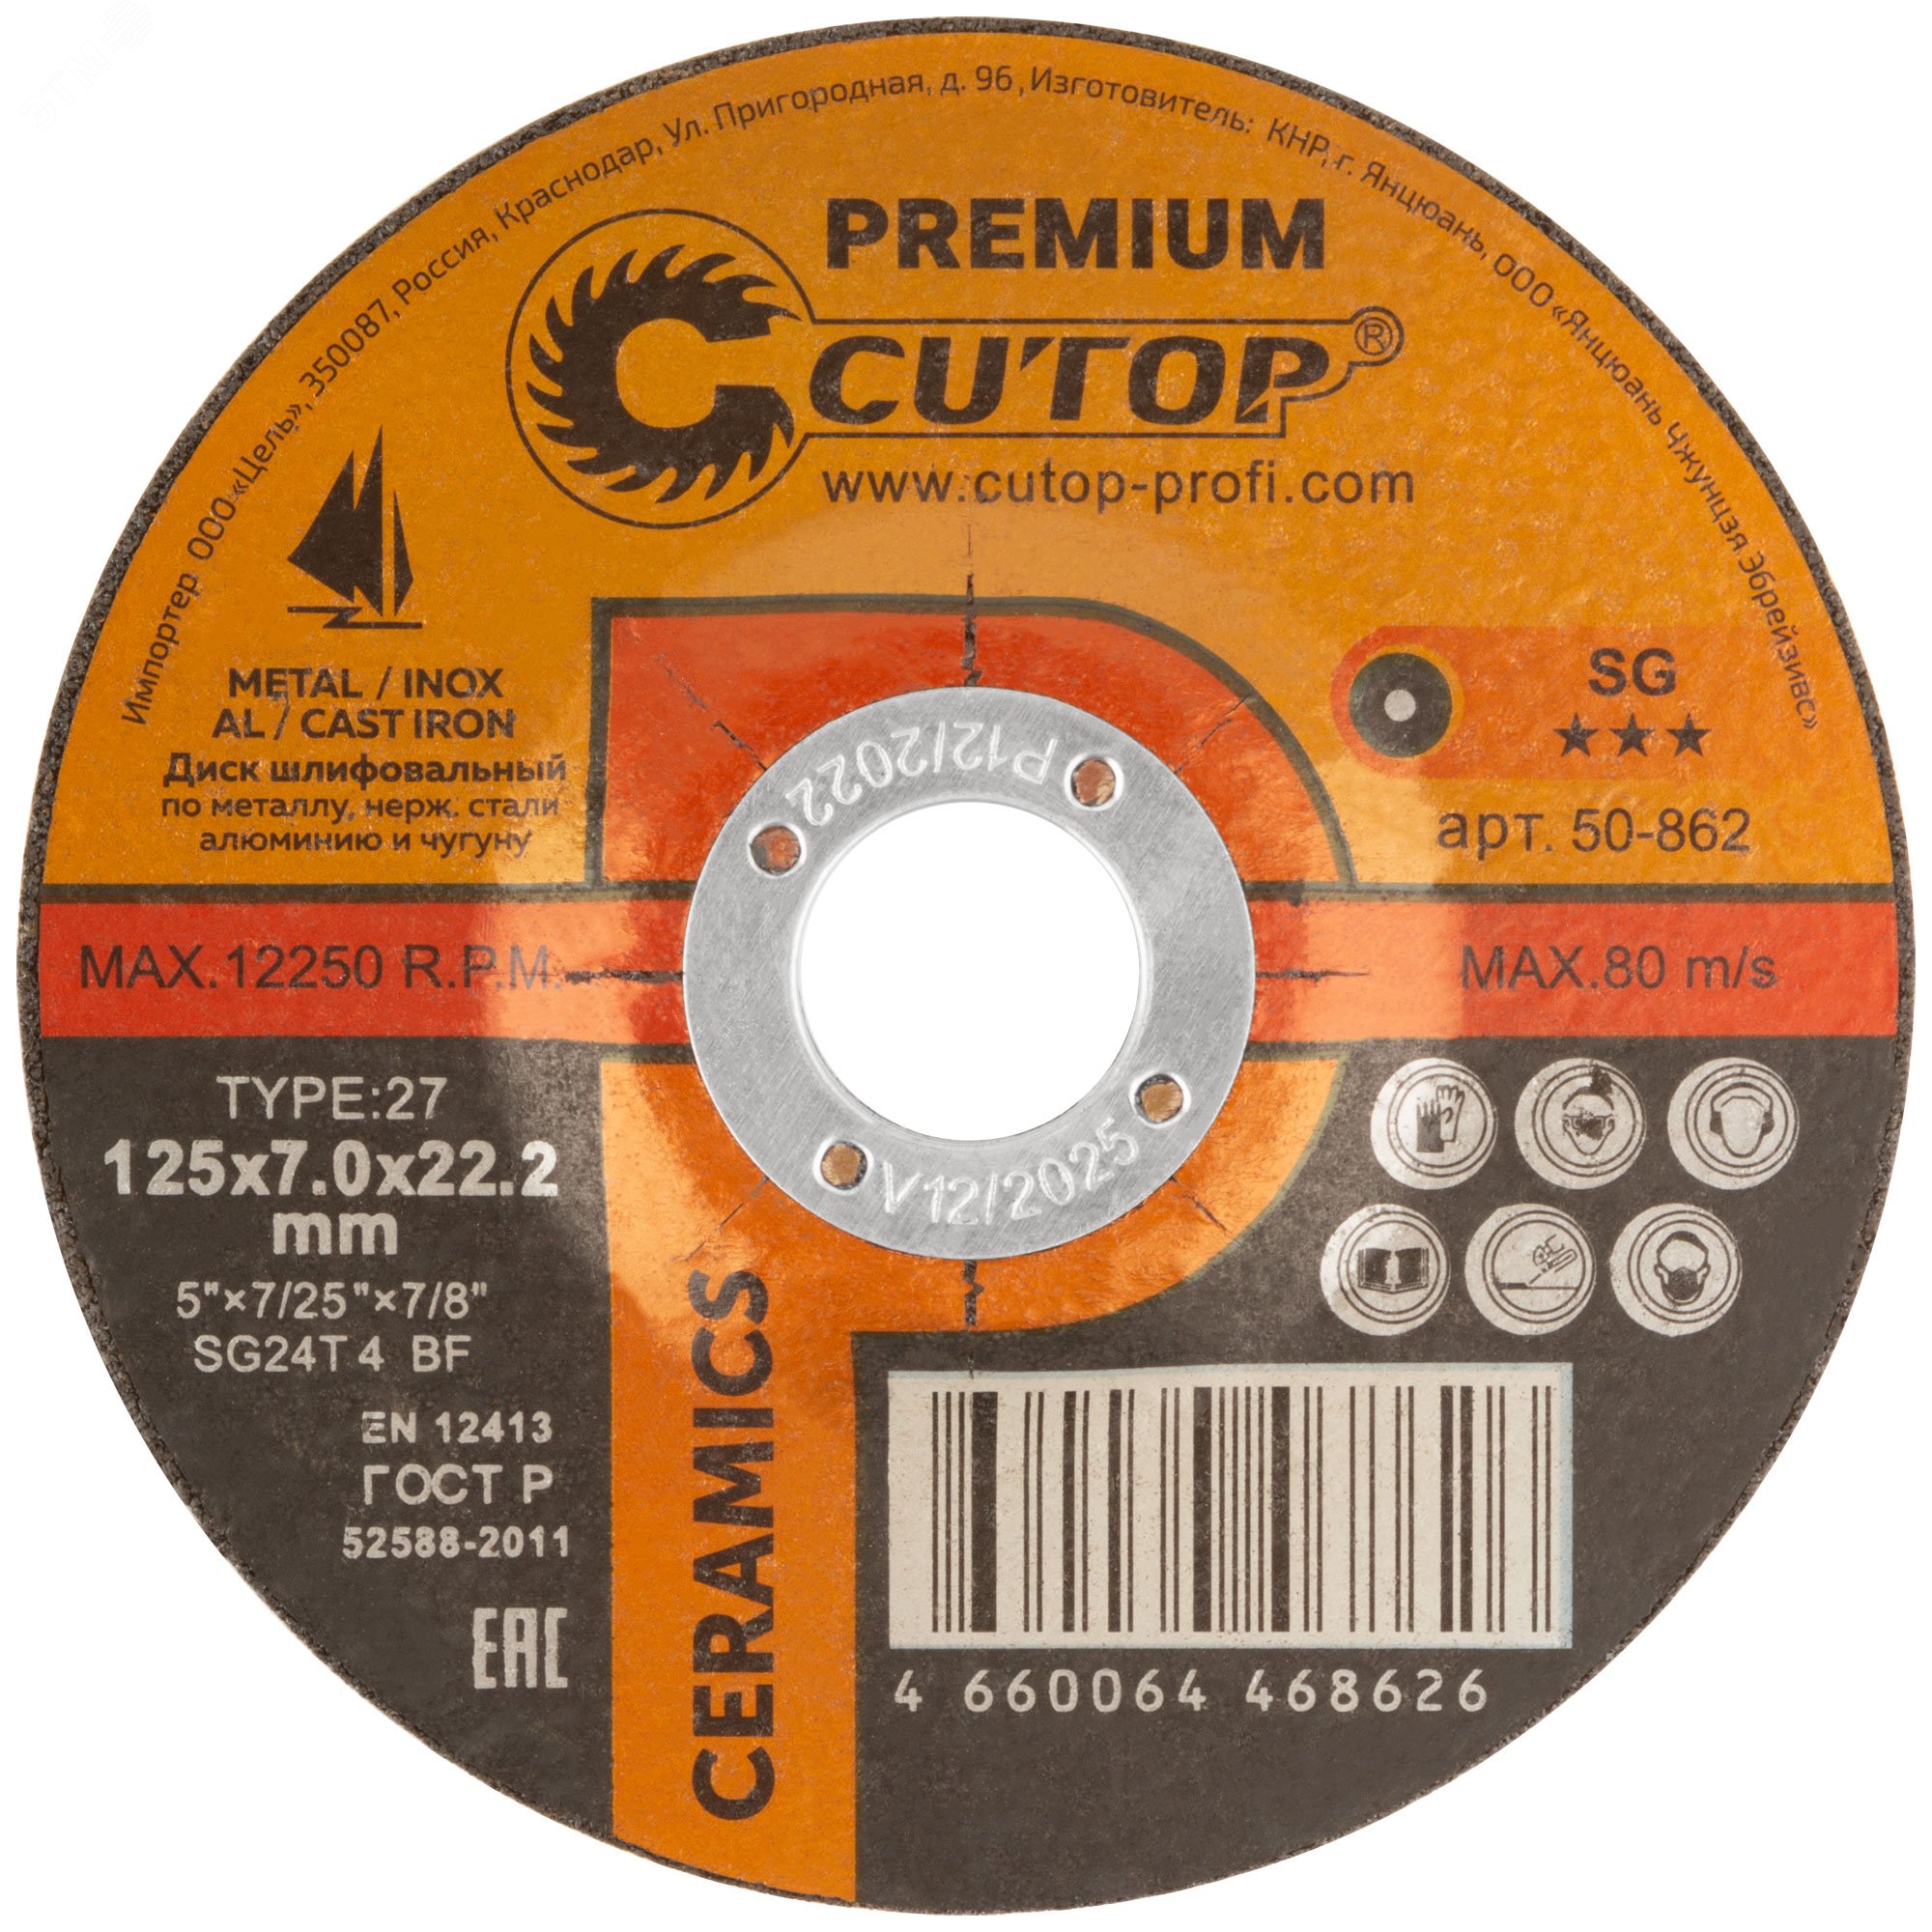 Диск шлифовальный по металлу, нержавеющей стали и чугуну Cutop CERAMICS, серия Premium, T27-125 х 7 х 22,2 мм 50-862 CUTOP - превью